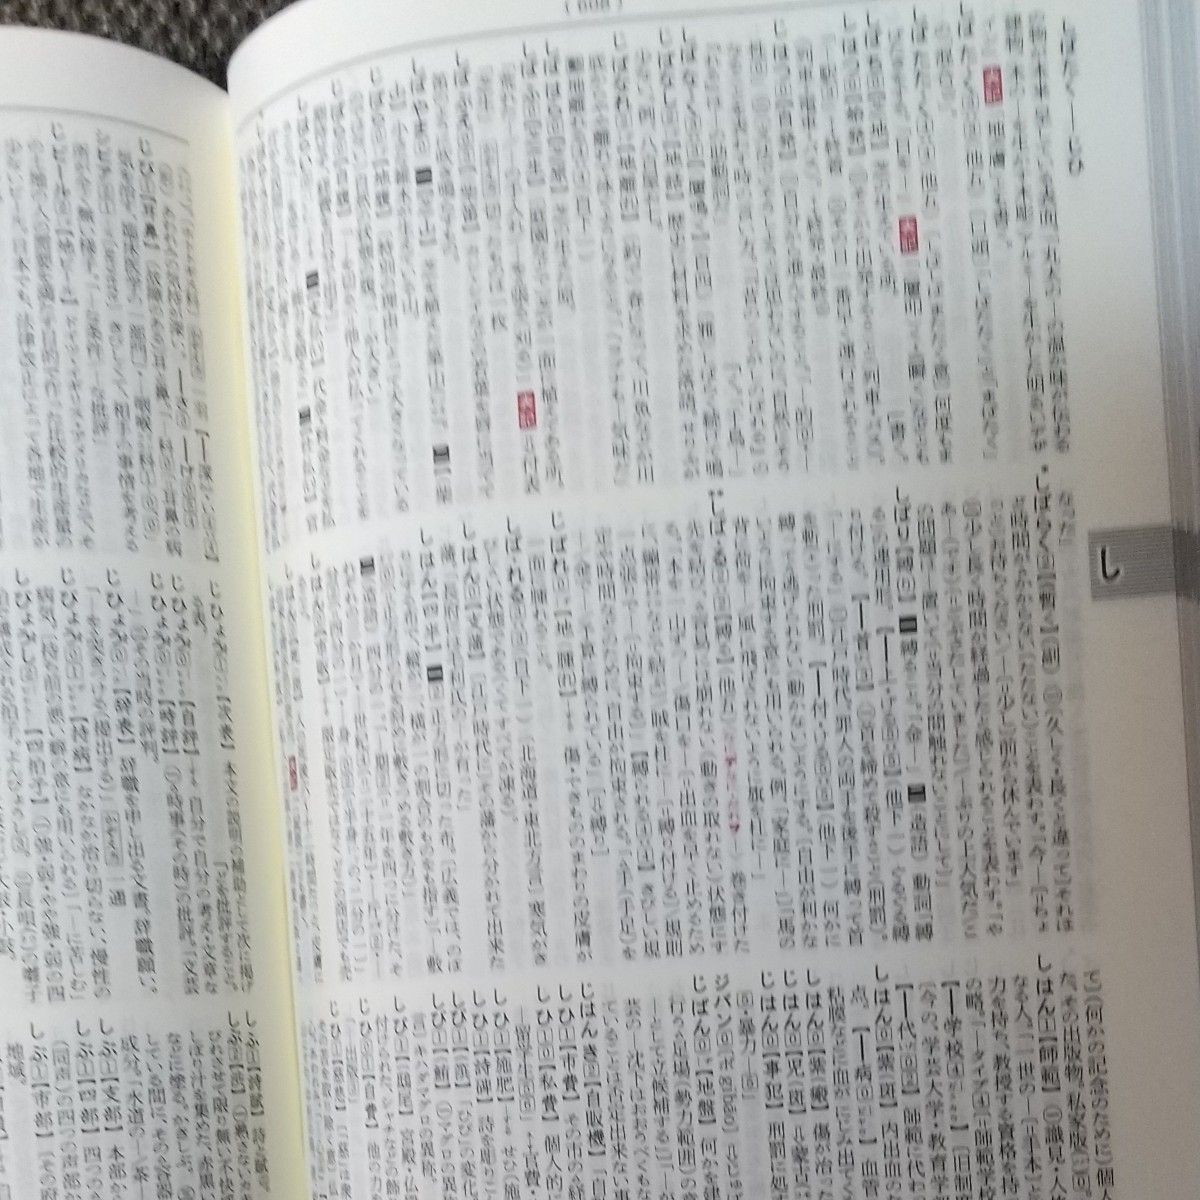 新明解国語辞典 三省堂 山田忠雄 2000年10月第22刷発行